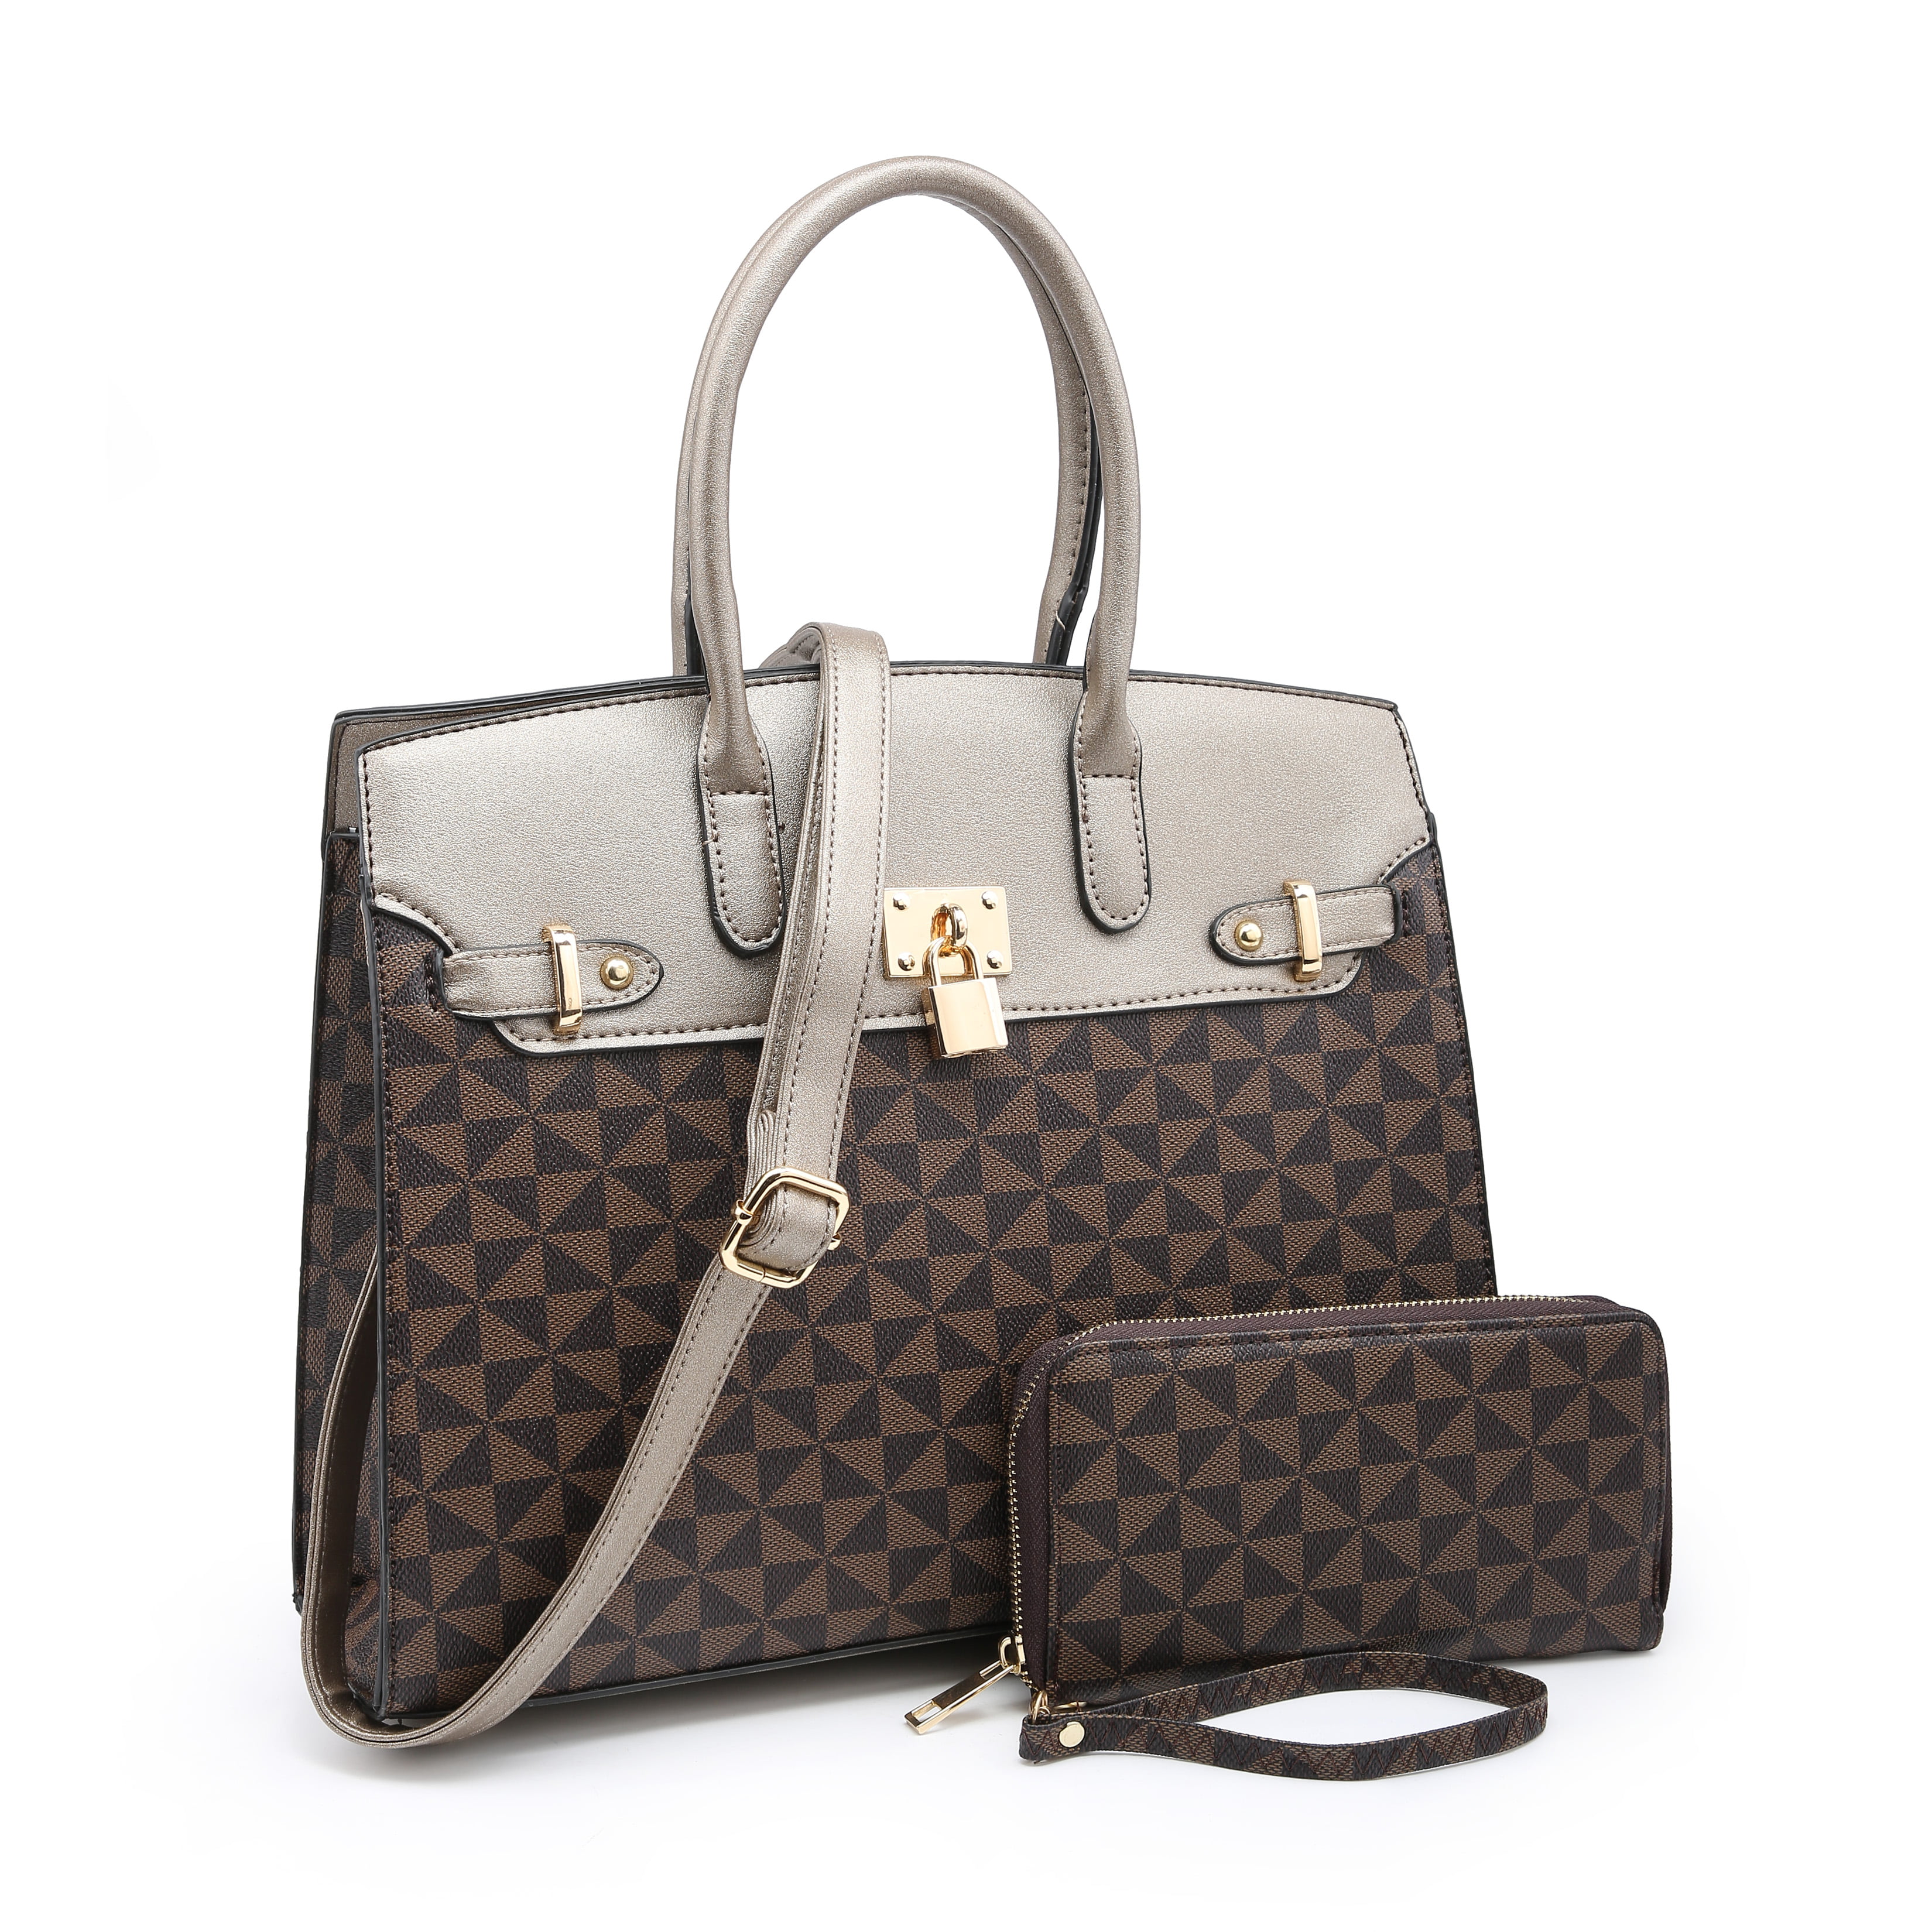 Poppy - POPPY Handbags Gift Set 2 in 1 Women's Top Handle Satchel Totes ...